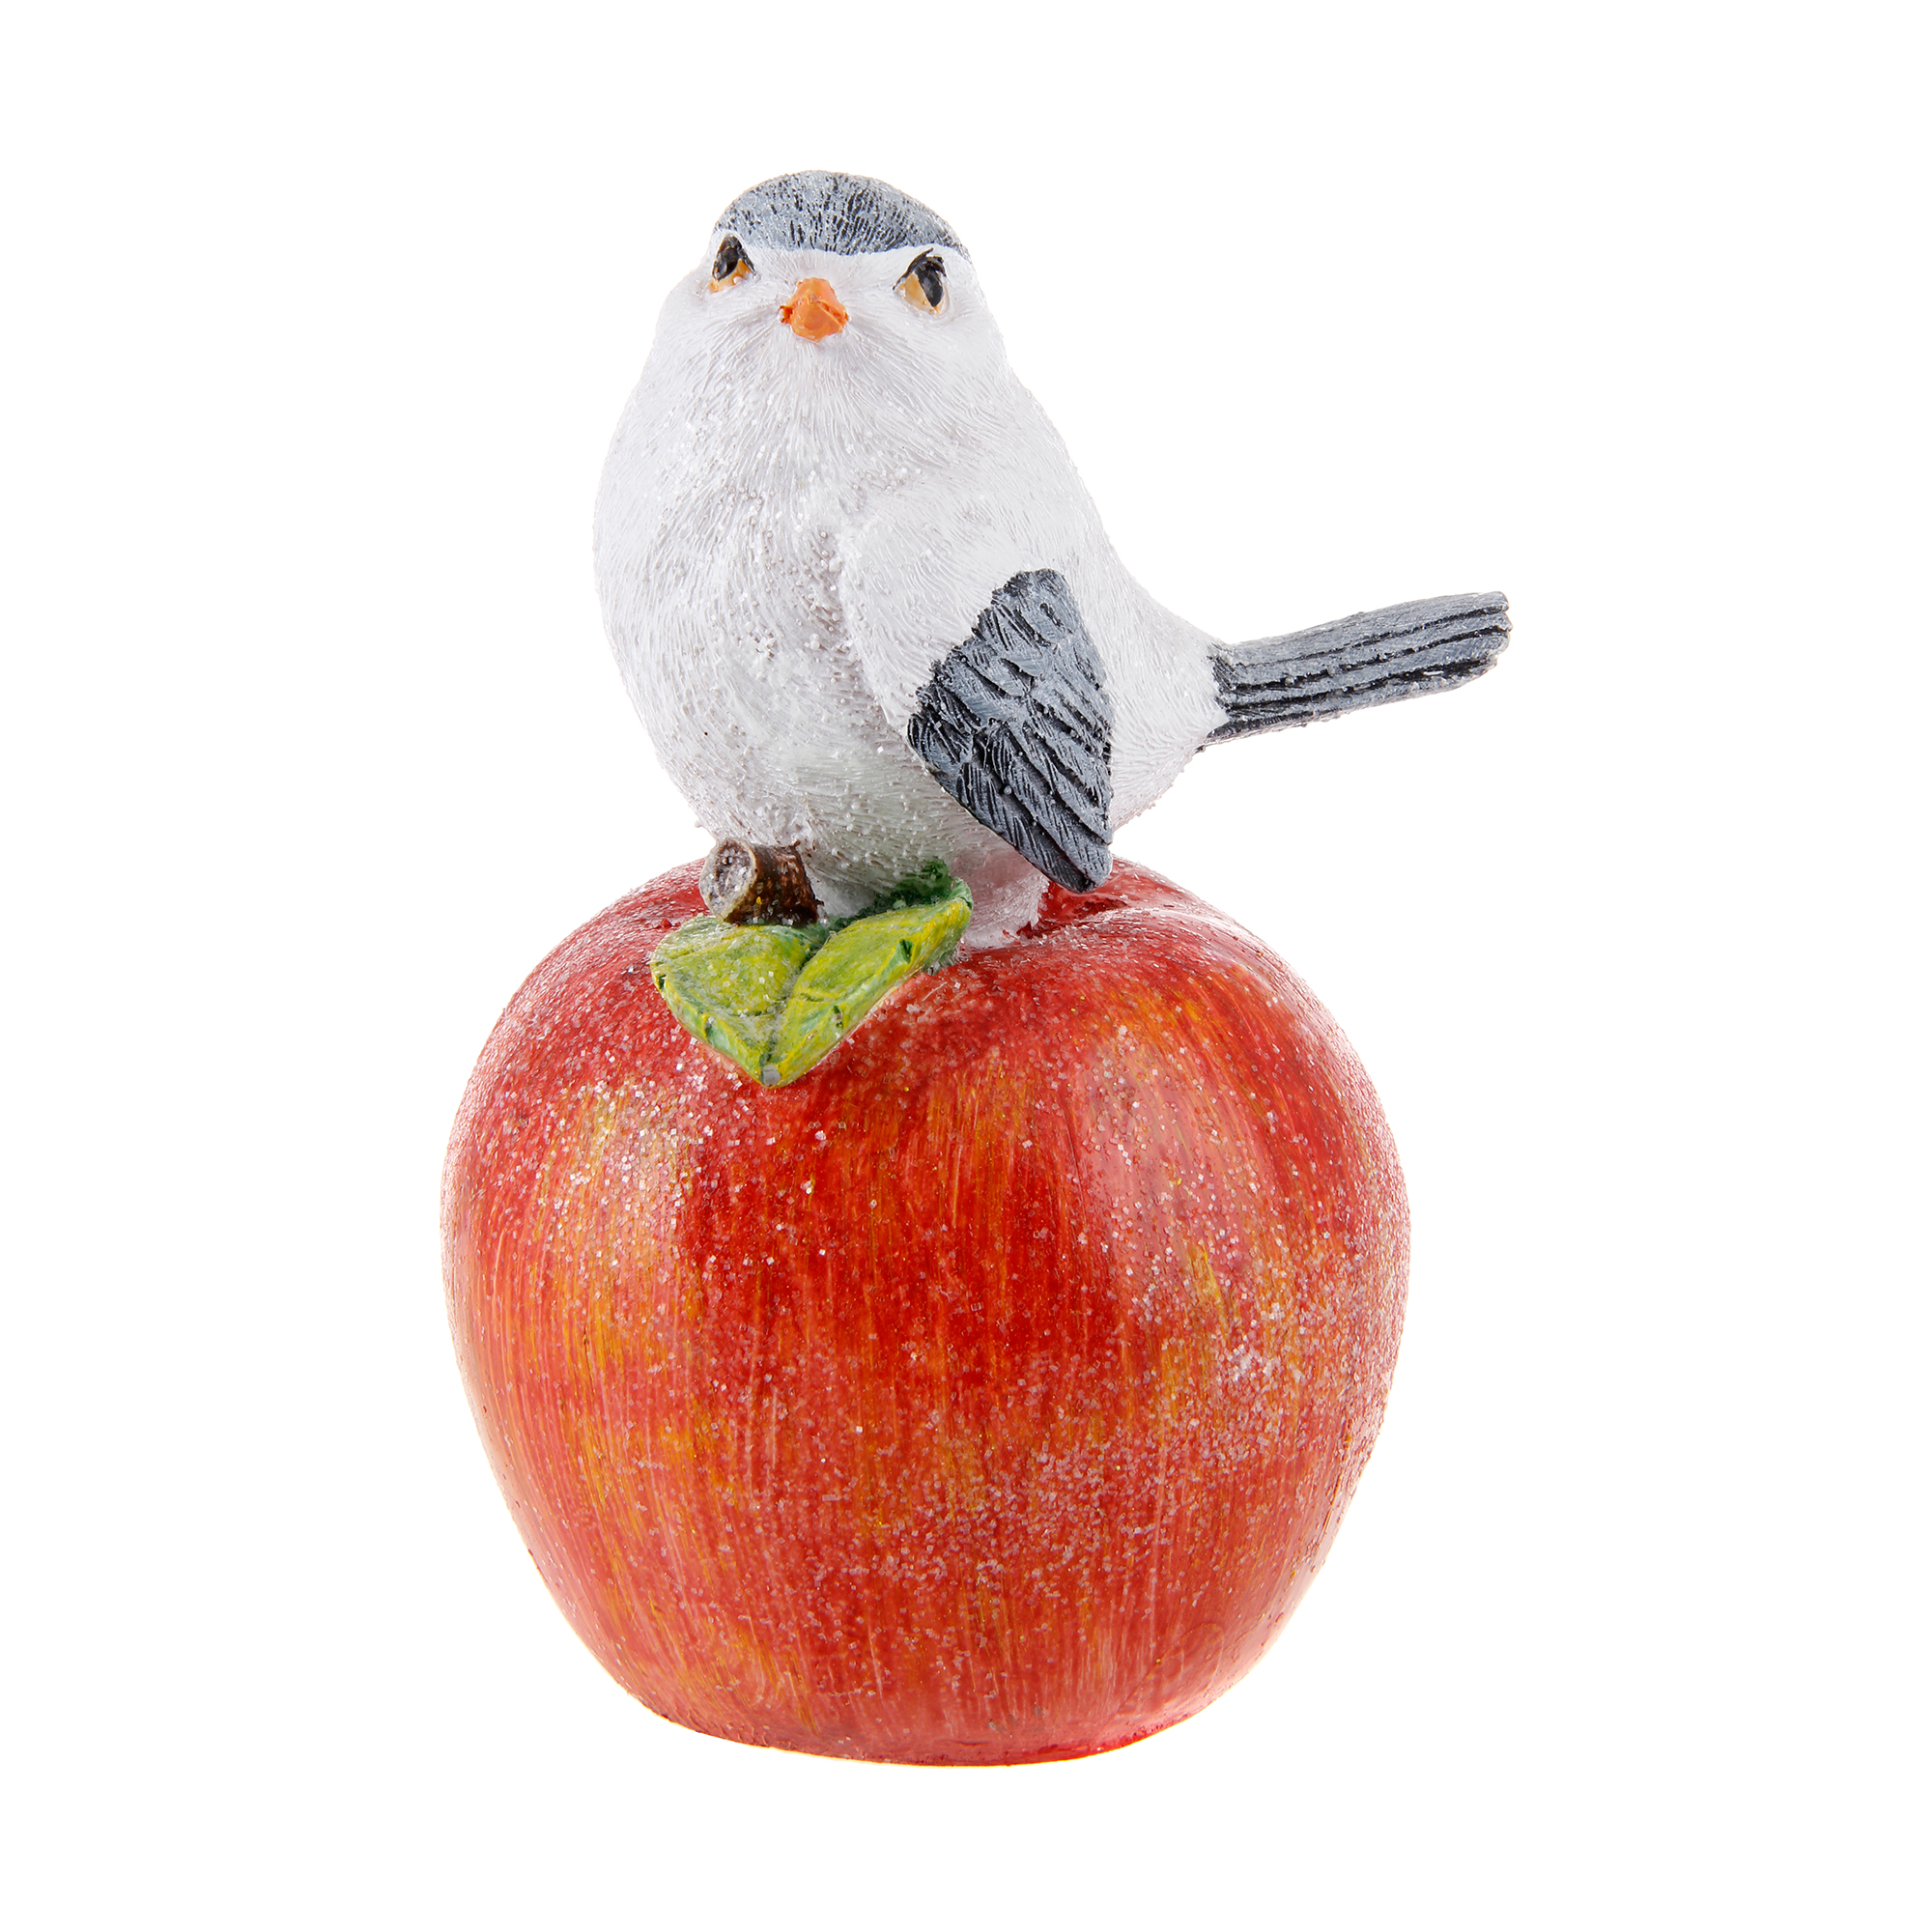 Птичка на яблоке новогодняя ТПК Полиформ 18 см декоративная новогодняя фигура тпк полиформ птичка на бревне